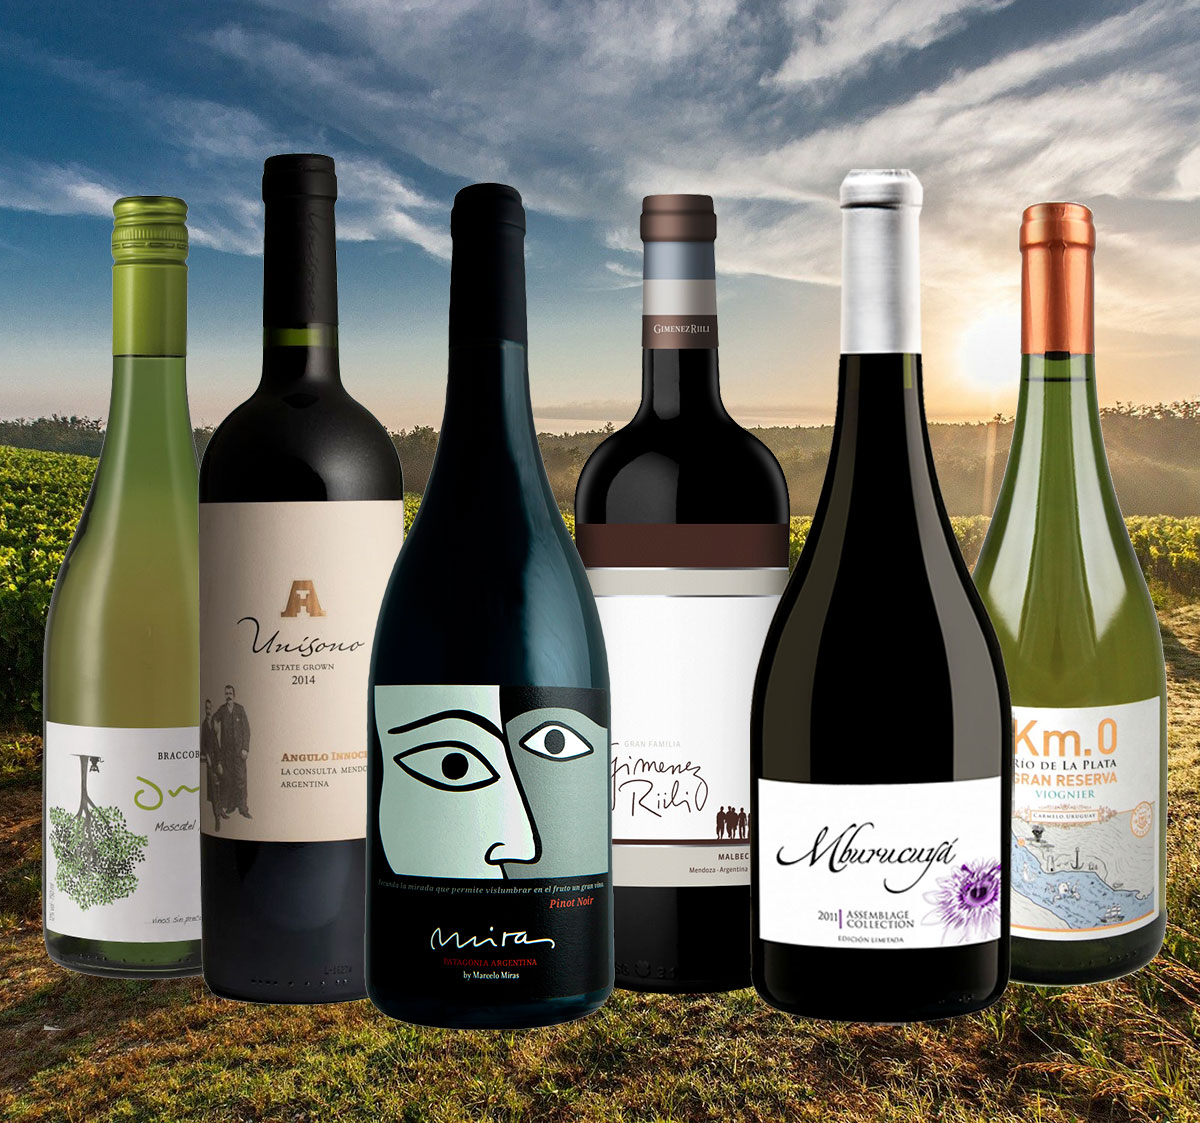 Weinprobe Pakete: Das Beste aus Argentinien und Uruguay